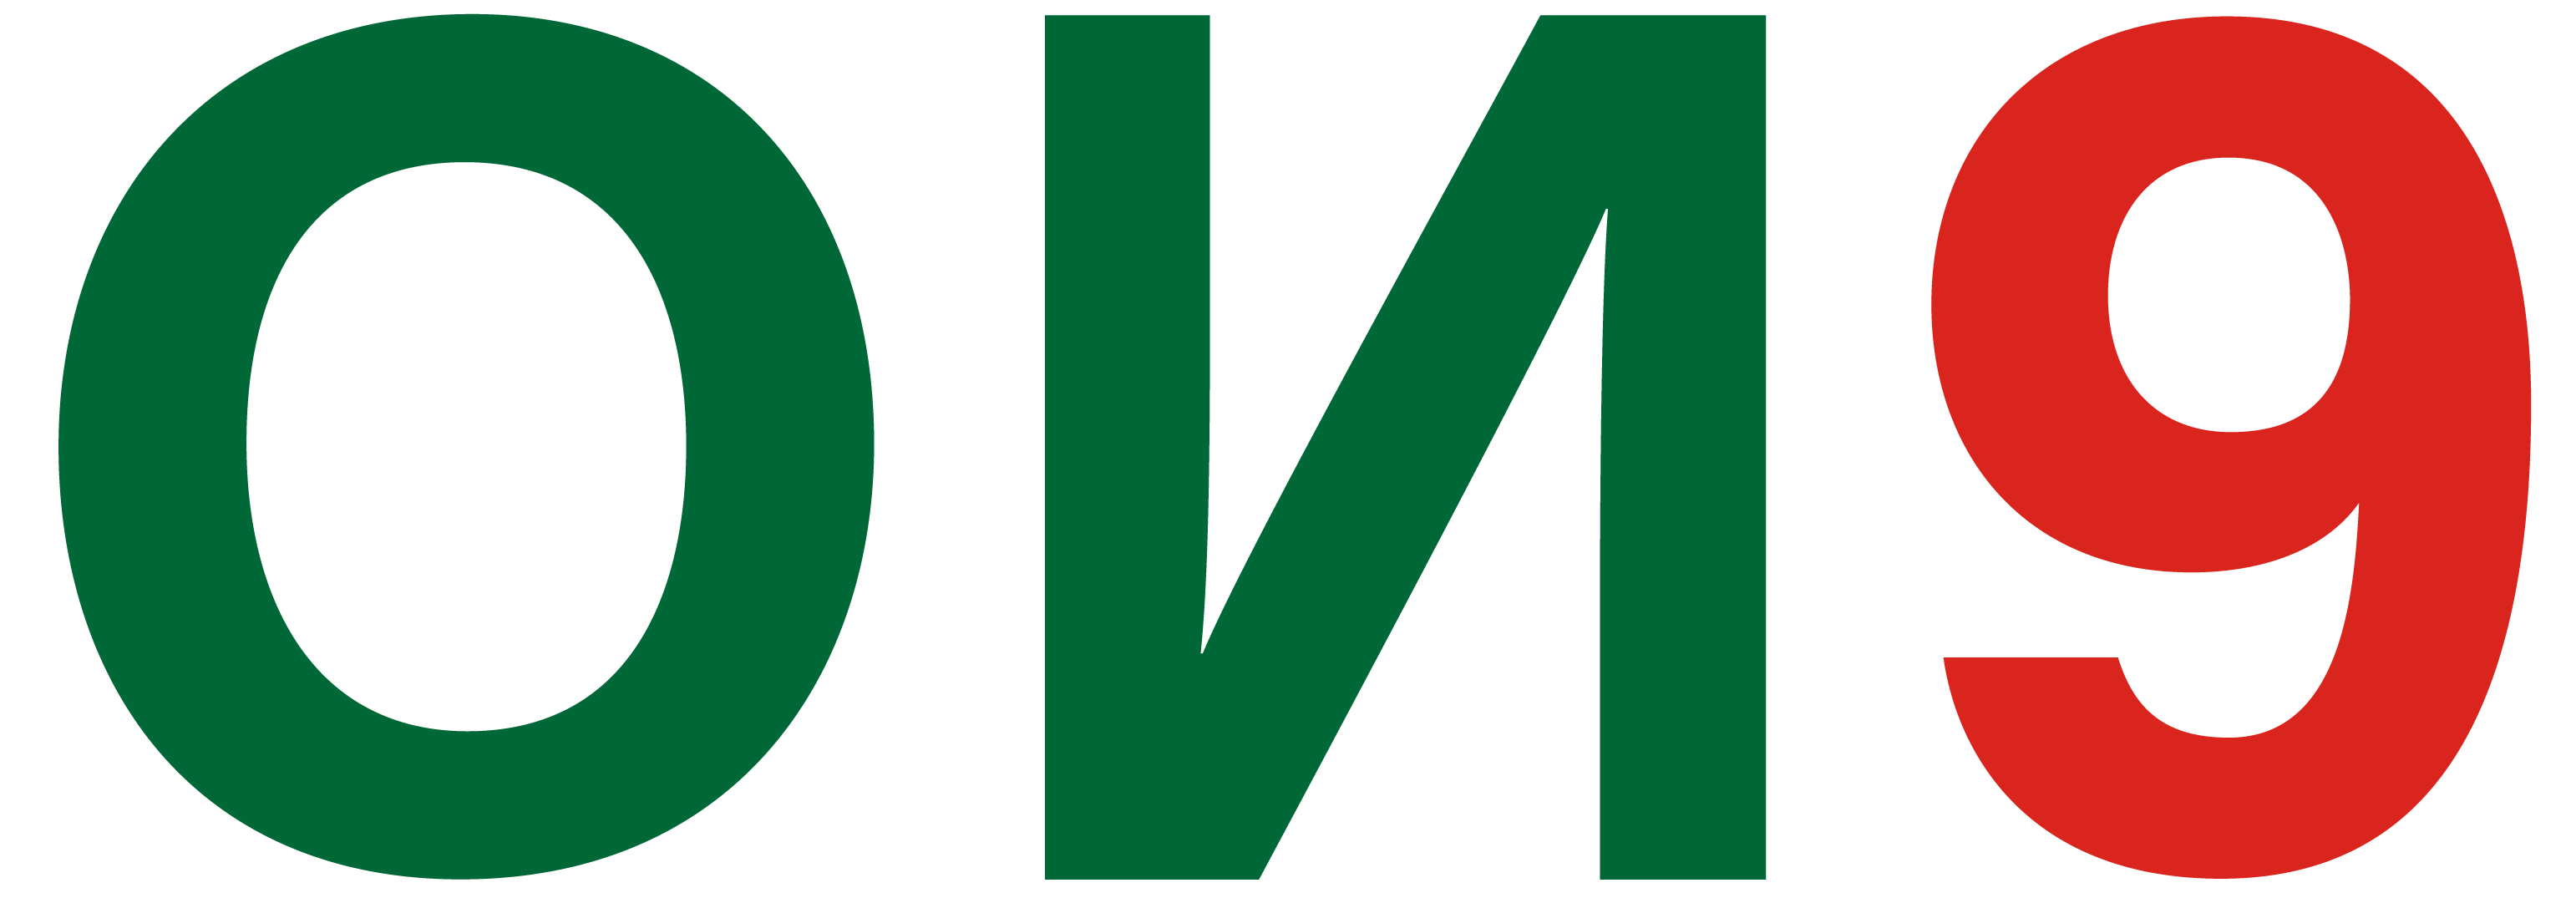 on9_logo